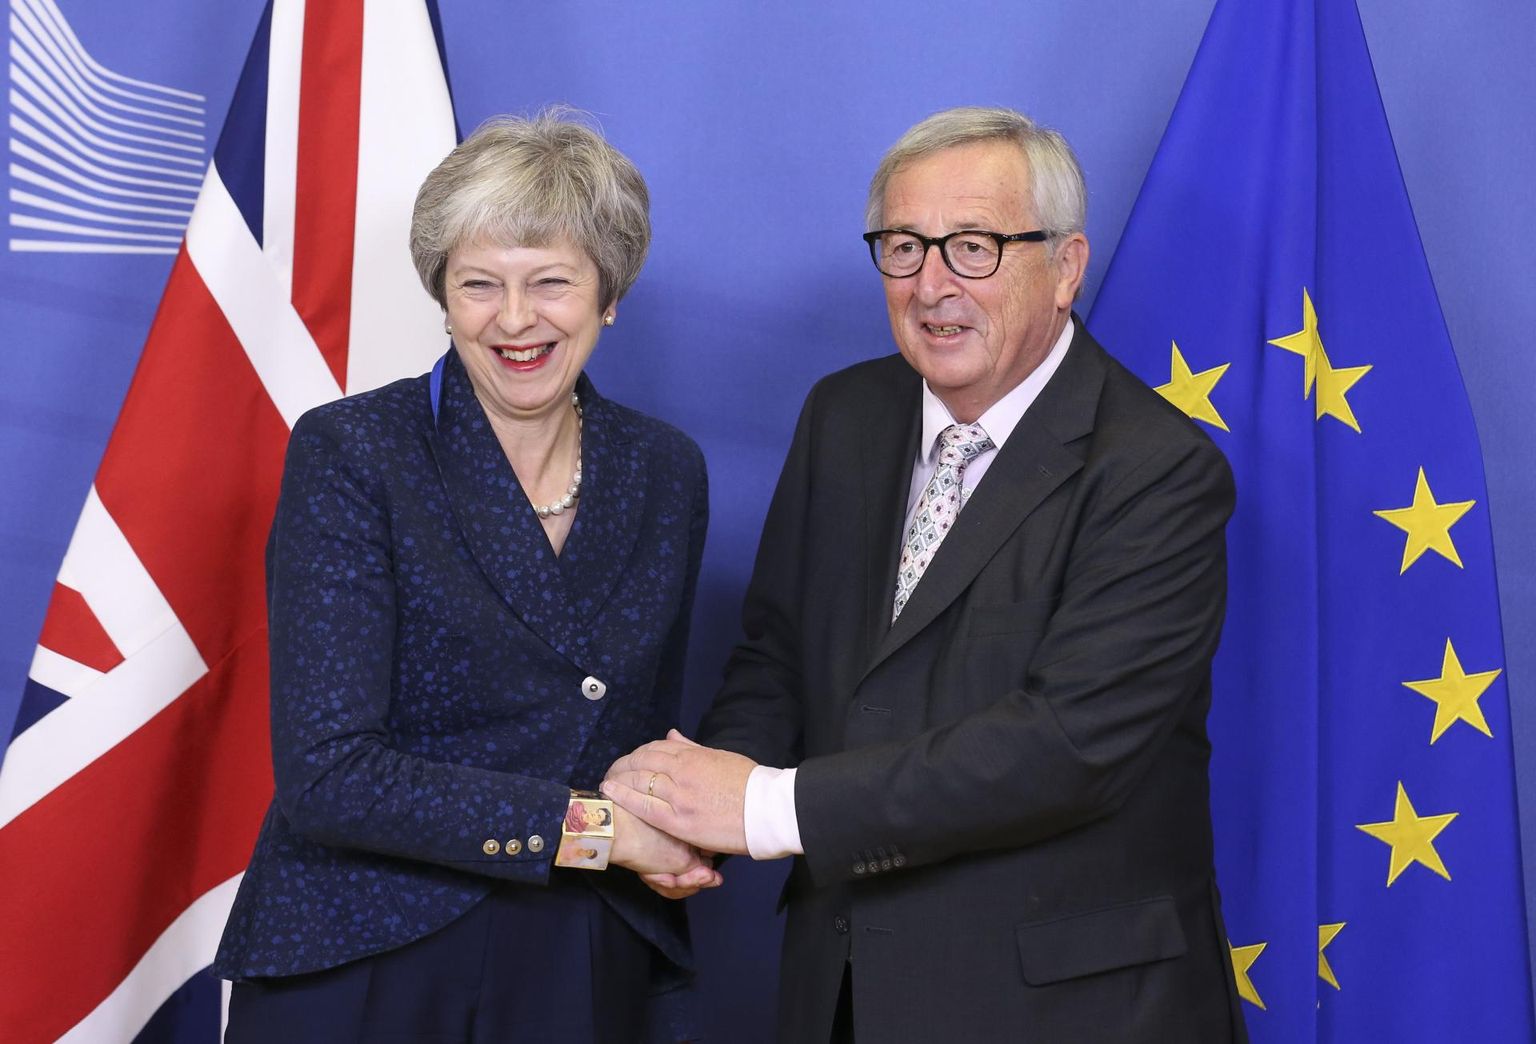 Ühendkuningriigi peaminister Theresa May ja Euroopa Komisjoni president Jean-Claude Juncker eile Brüsselis. Junckeri sõnul pole brittidel enam tagasiteed ja paremaid lahkumistingimusi ei õnnestu kuidagi välja kaubelda.